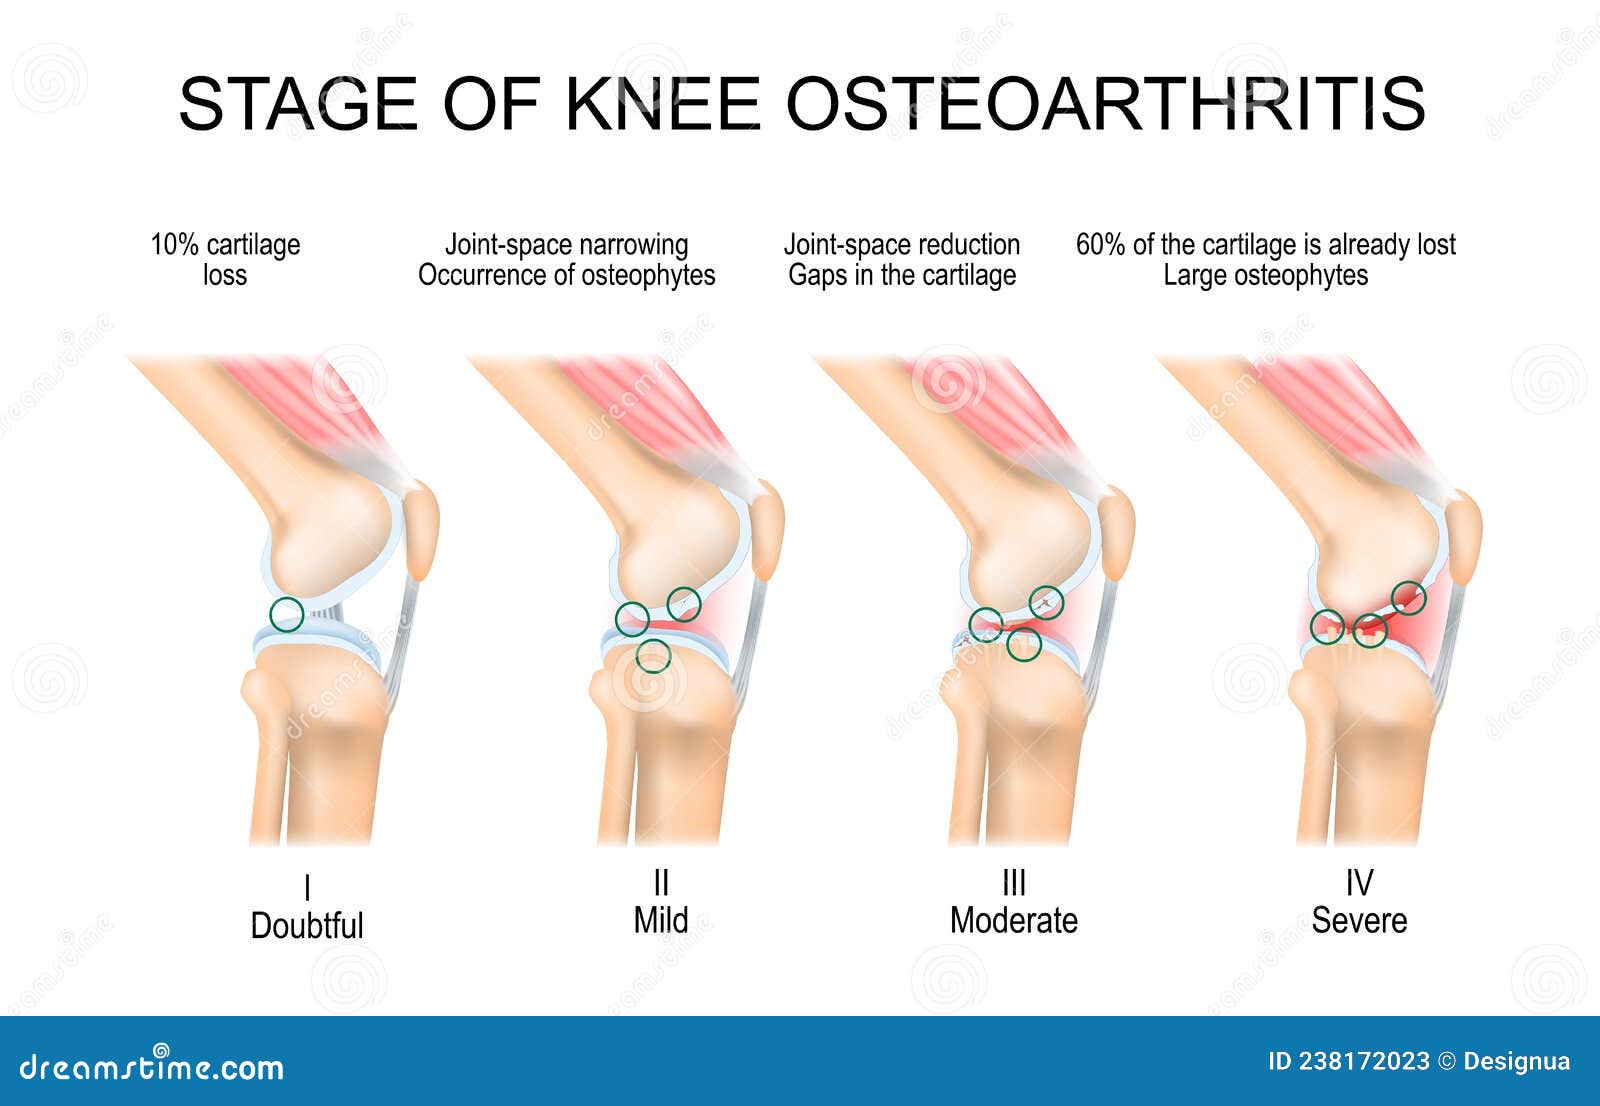 osteoarthritis knee kellgren lawrence